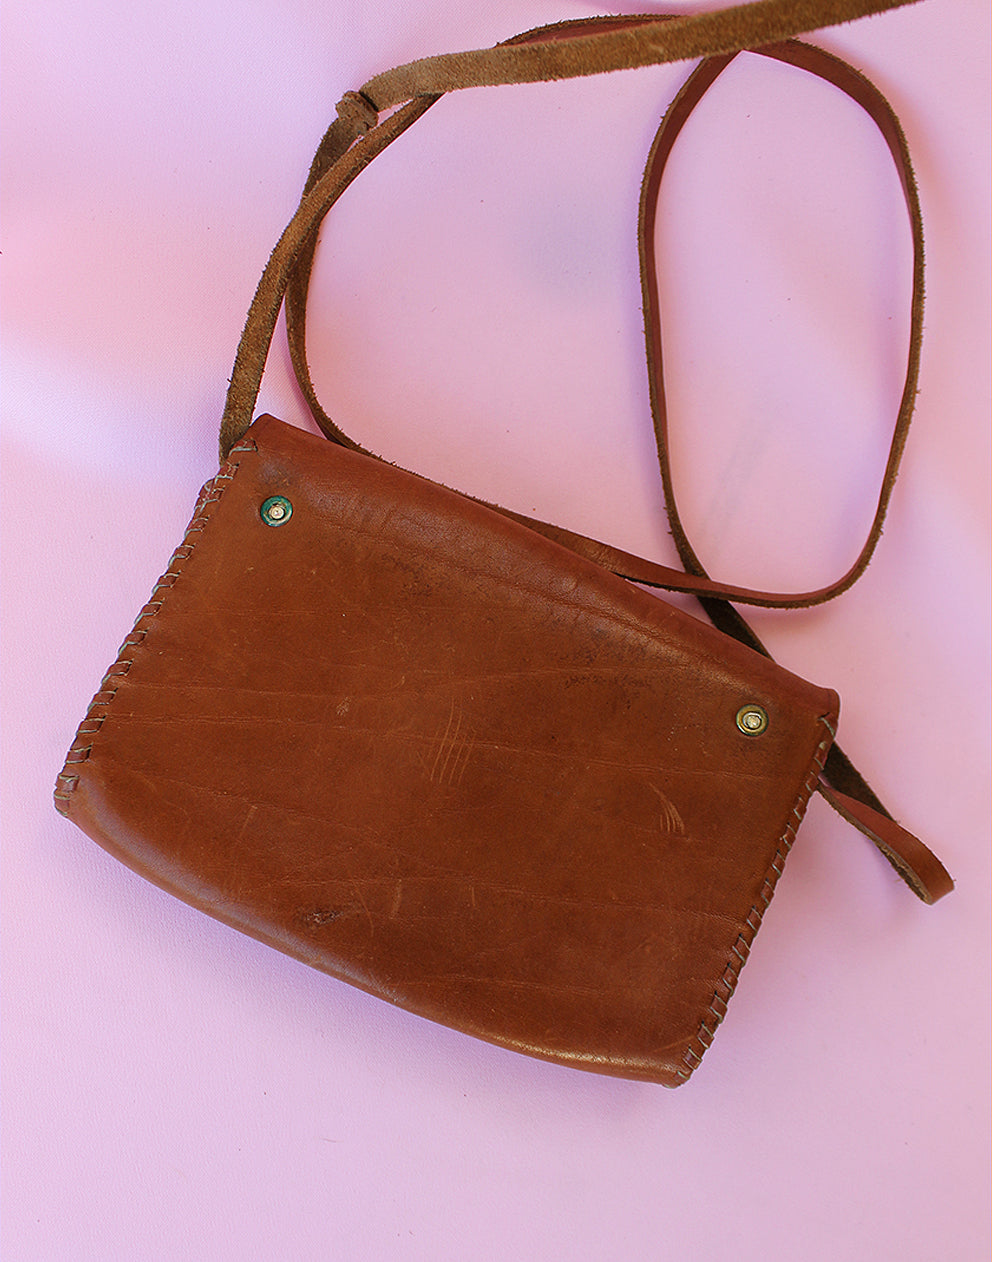 Tan Brown Real Leather Small Cross Body Handbag